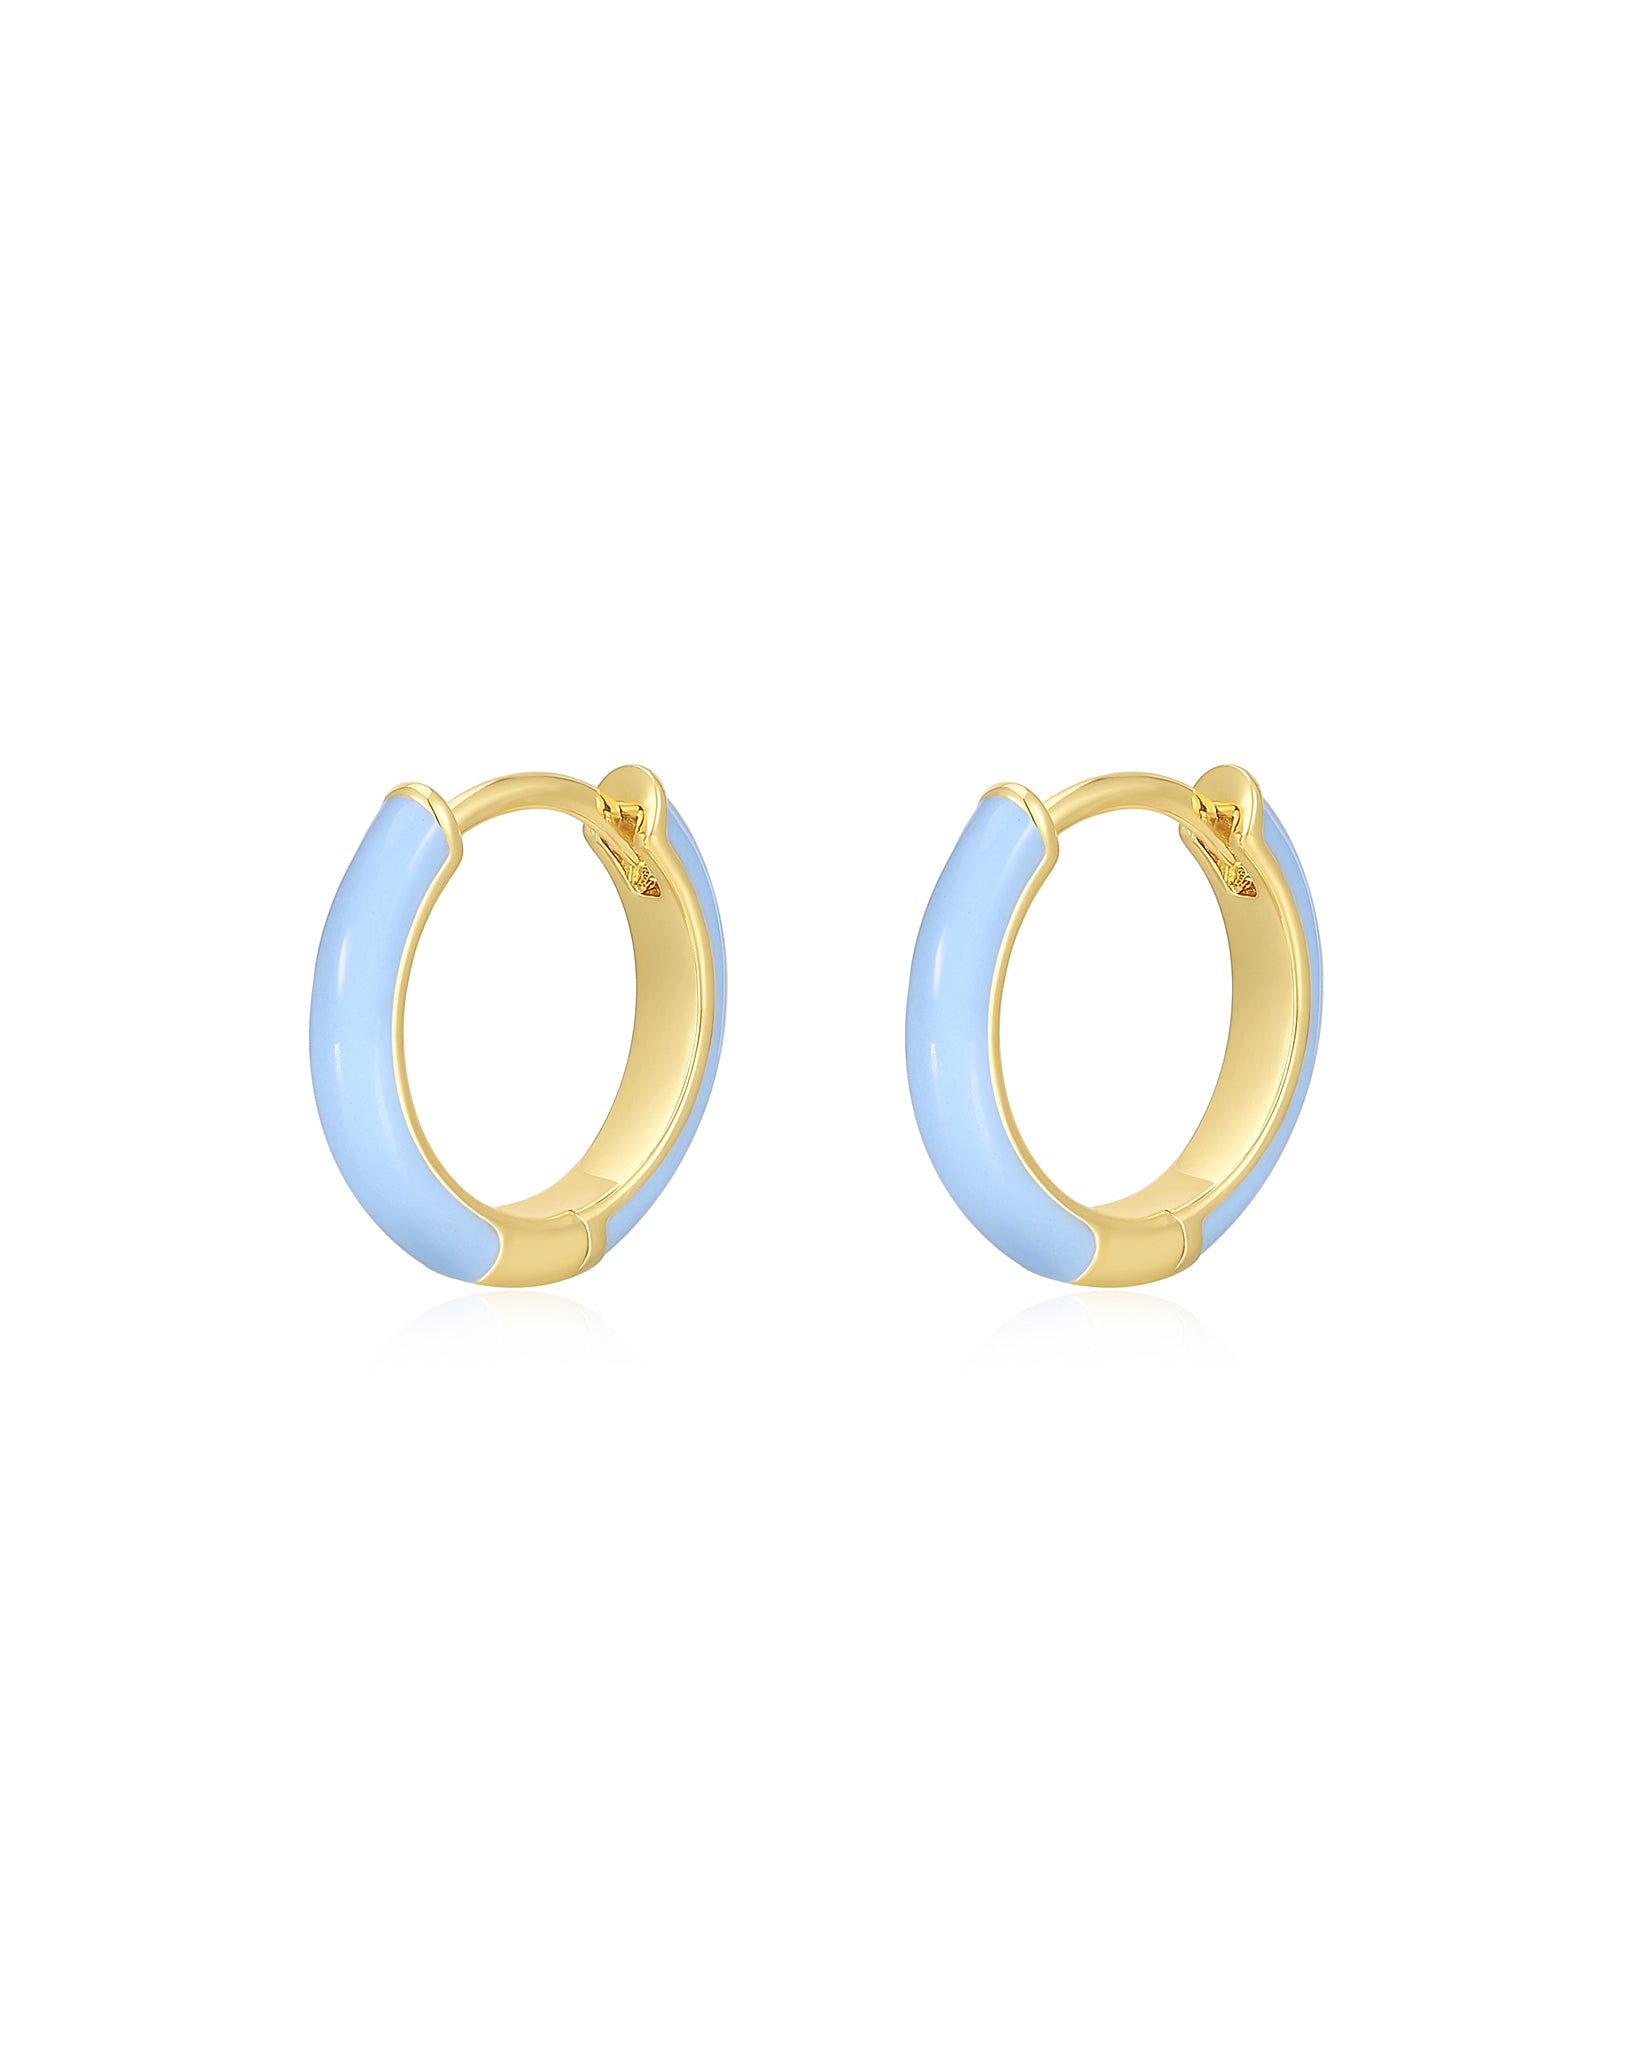 Luv Aj Plain Amalfi Huggie Hoop Earrings in Baby Blue Enamel and Polished Gold